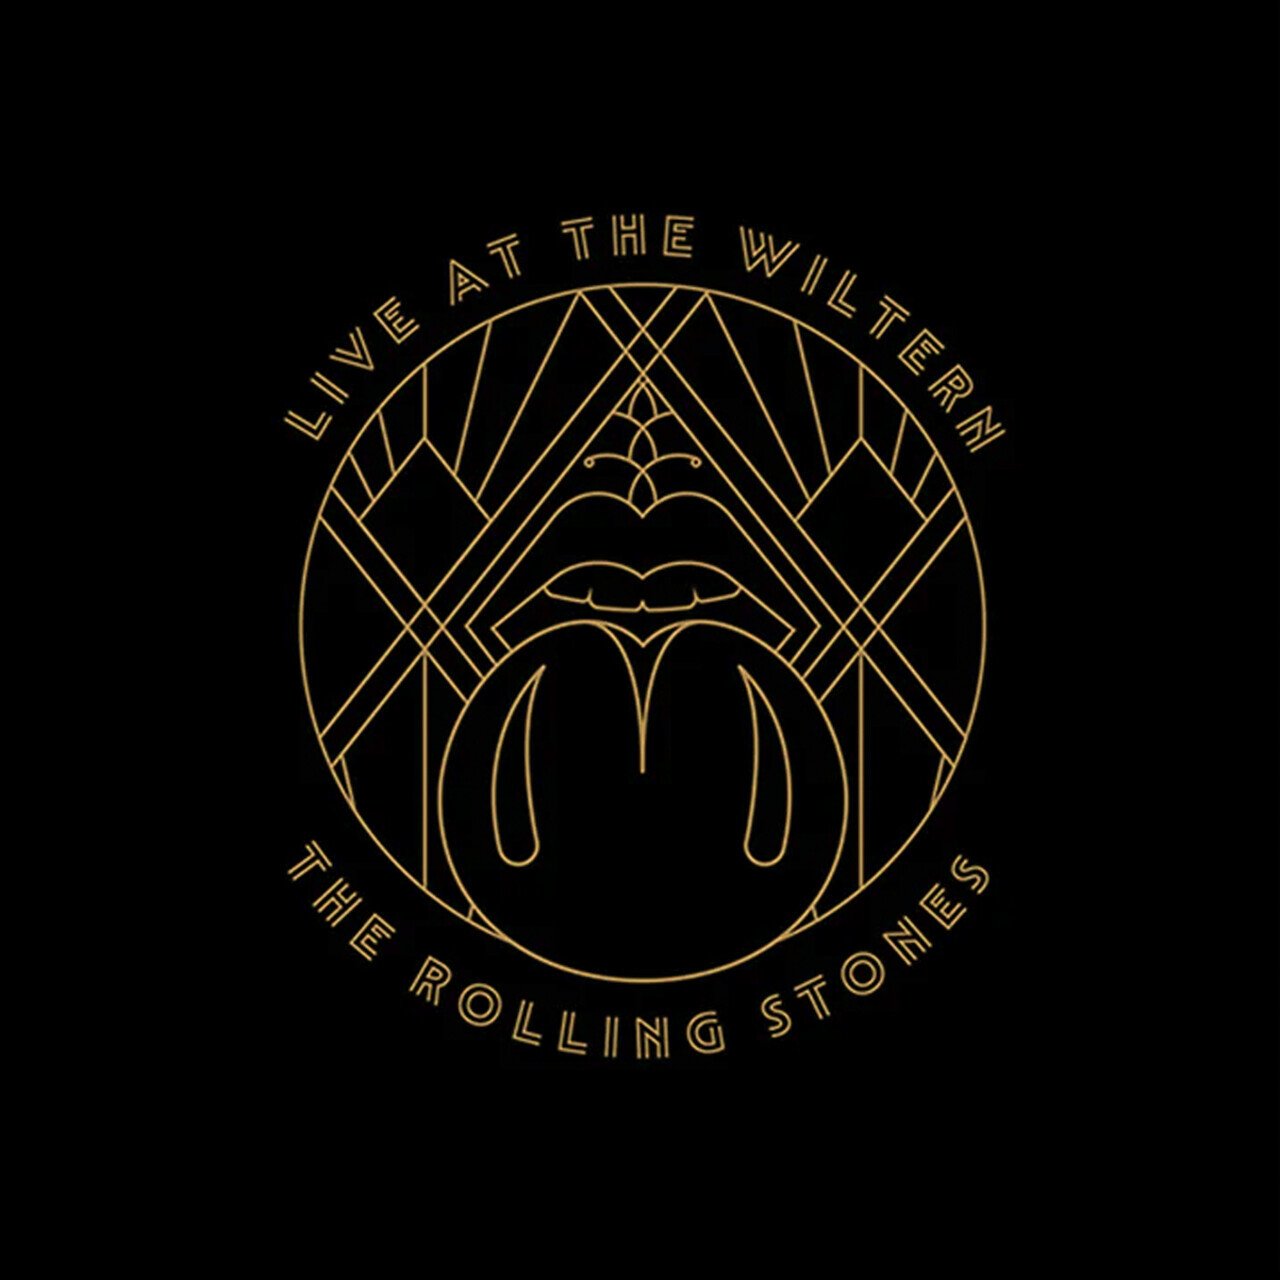 Рок Universal (Aus) Rolling Stones, The - Live At The Wiltern (Black Vinyl 3LP) рок universal us the rolling stones metamorphosis